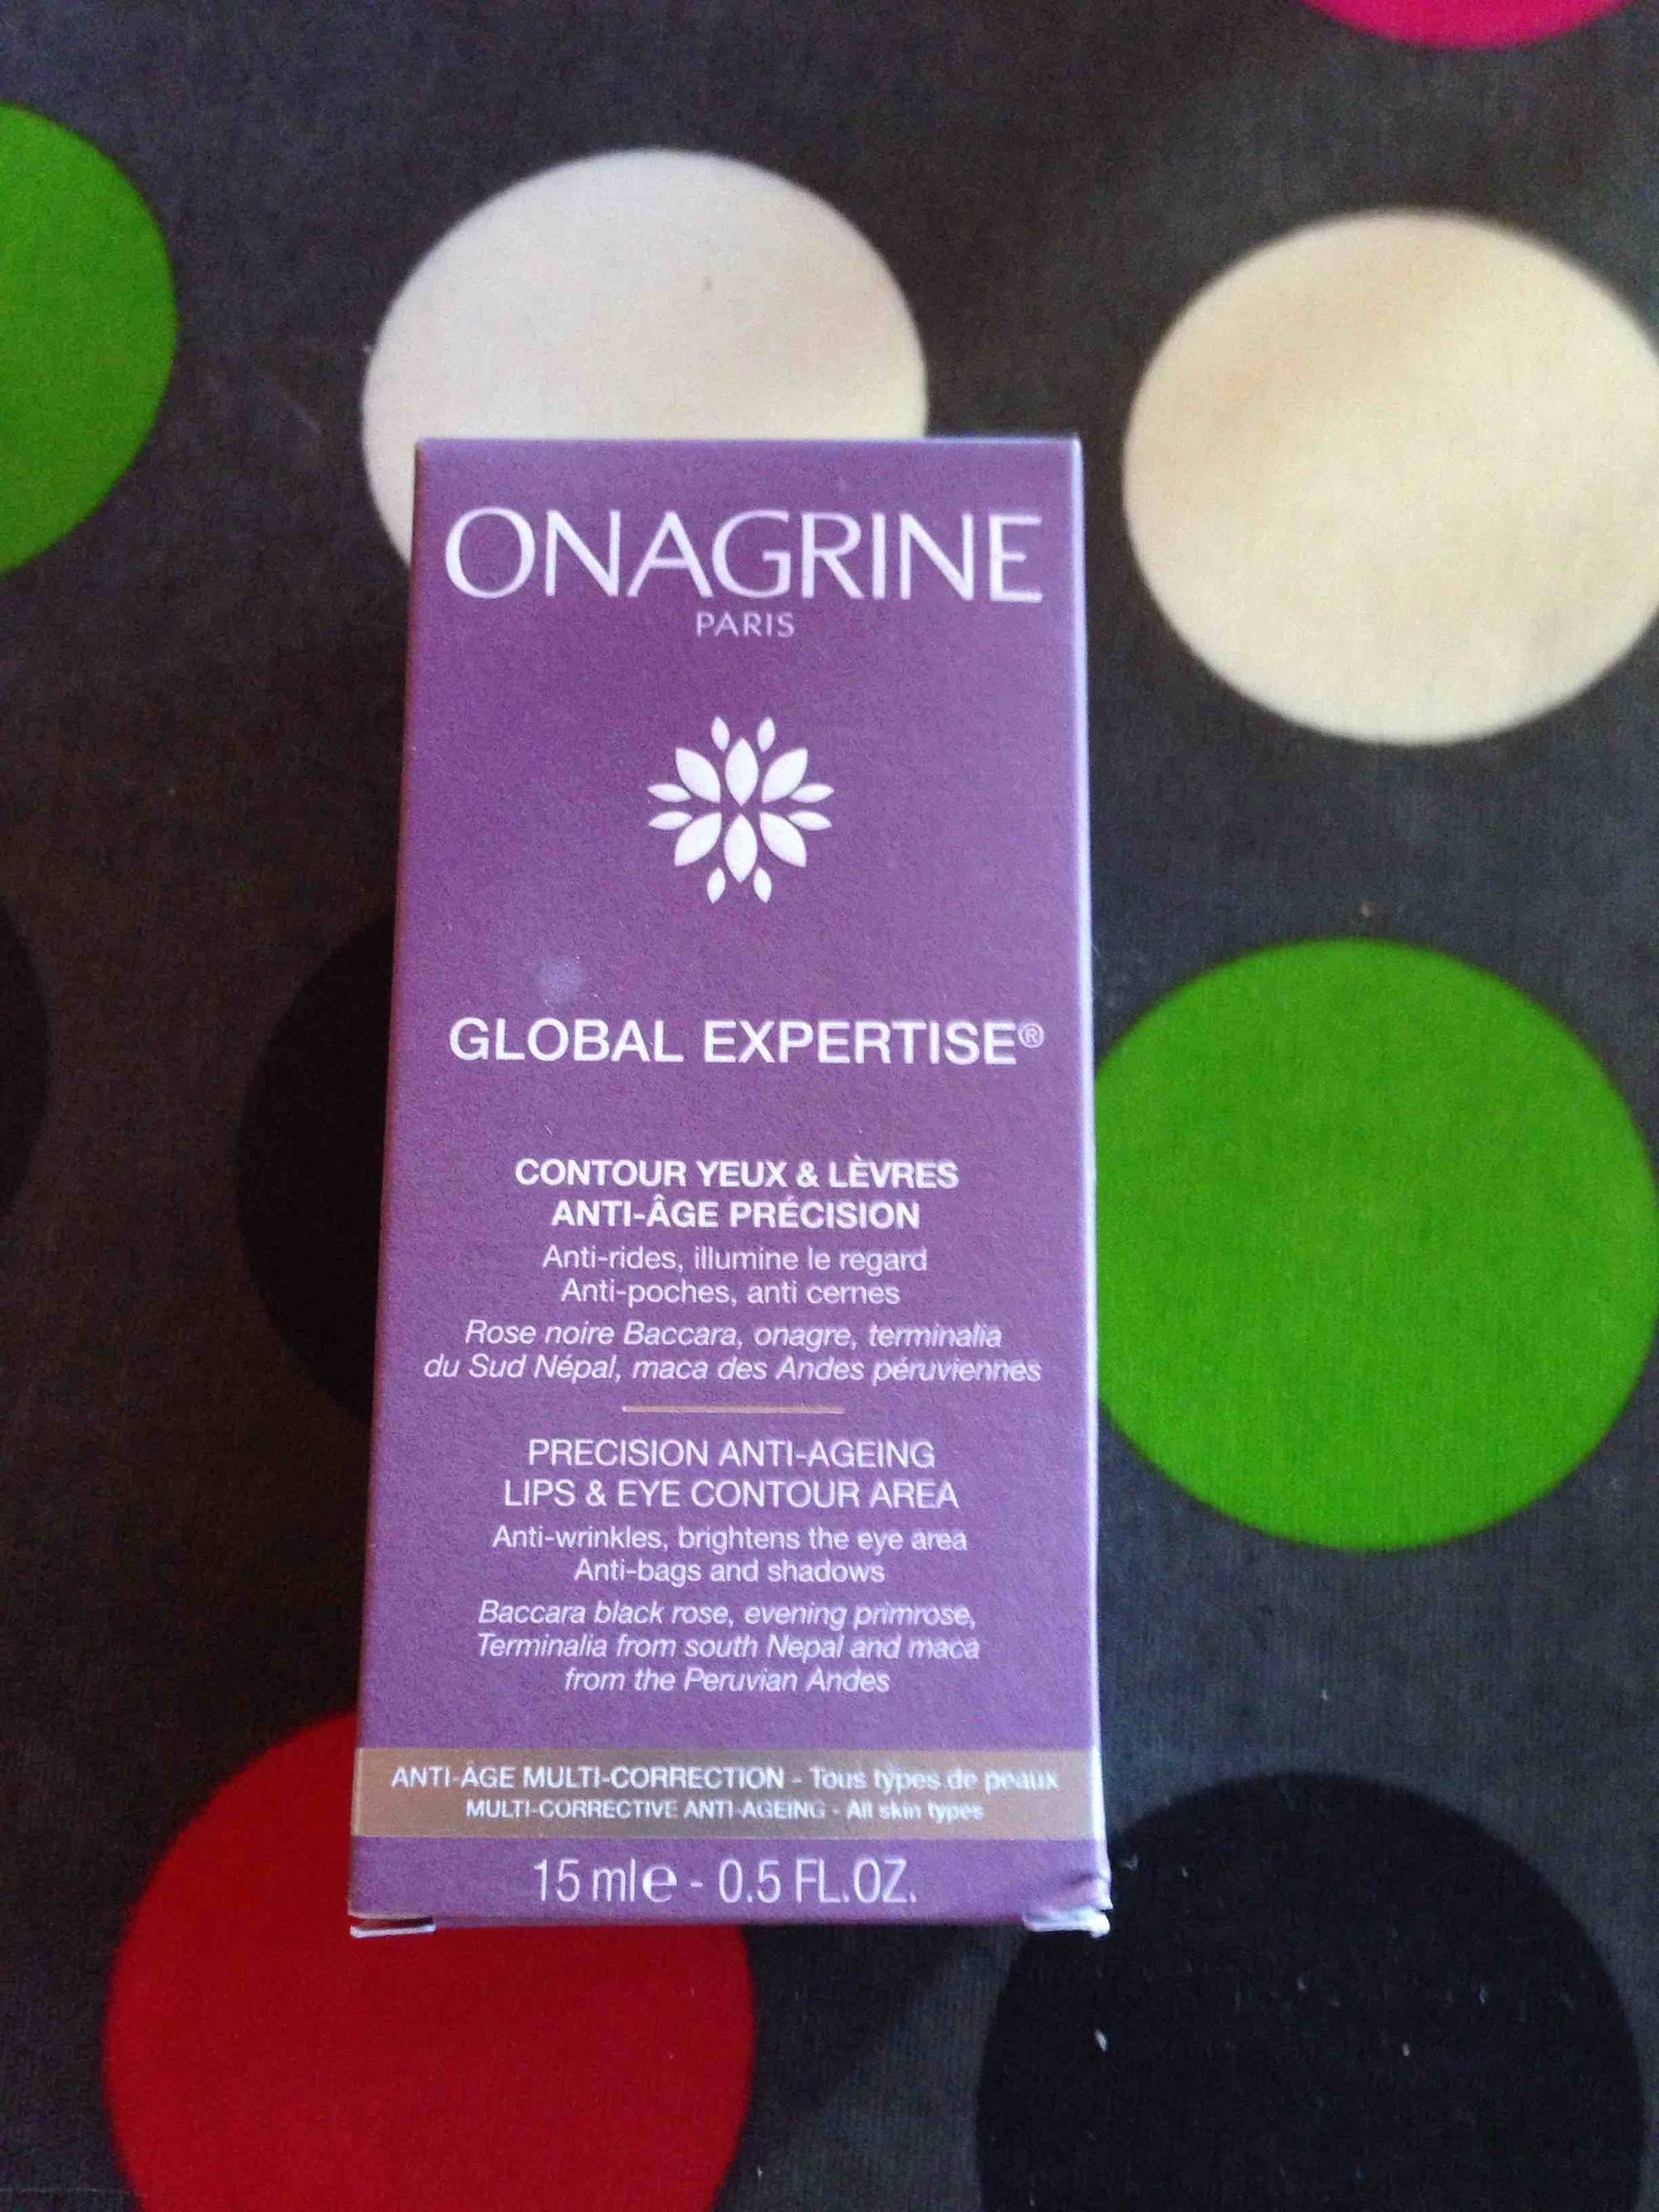 ONAGRINE - Global expertise - Contour yeux & lèvres anti-âge précision